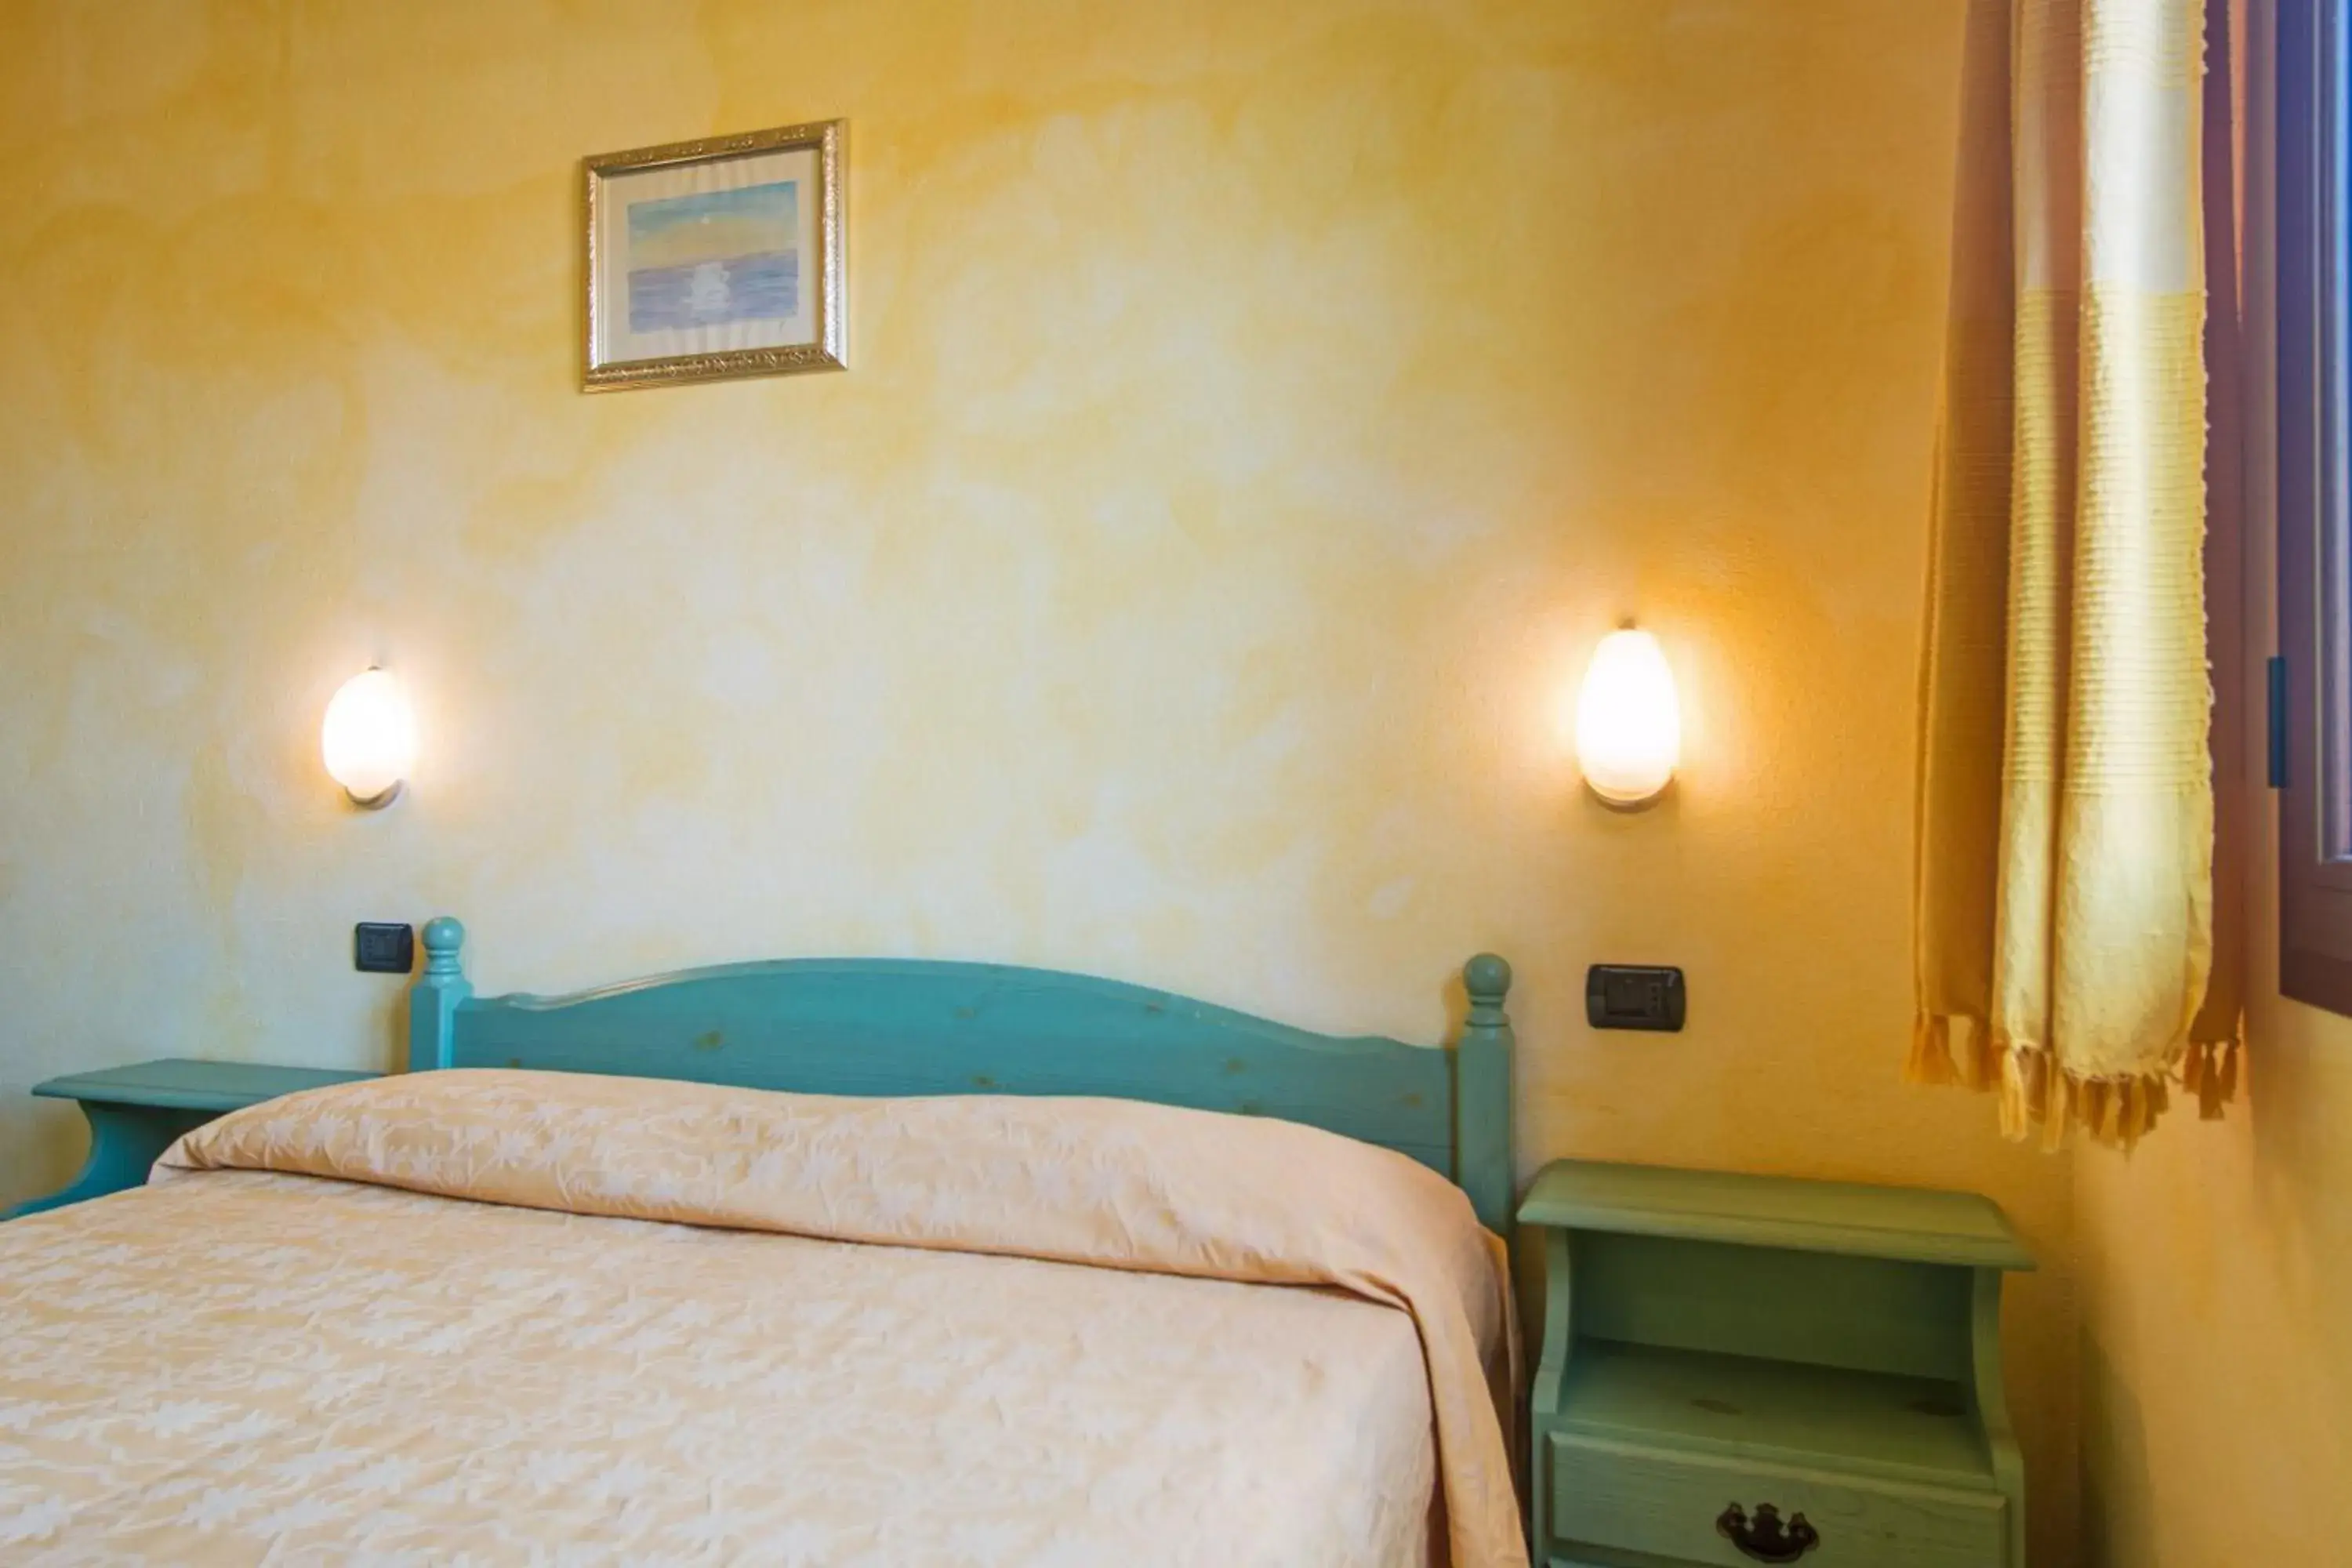 Bedroom, Room Photo in Albergo Residenziale Gli Ontani